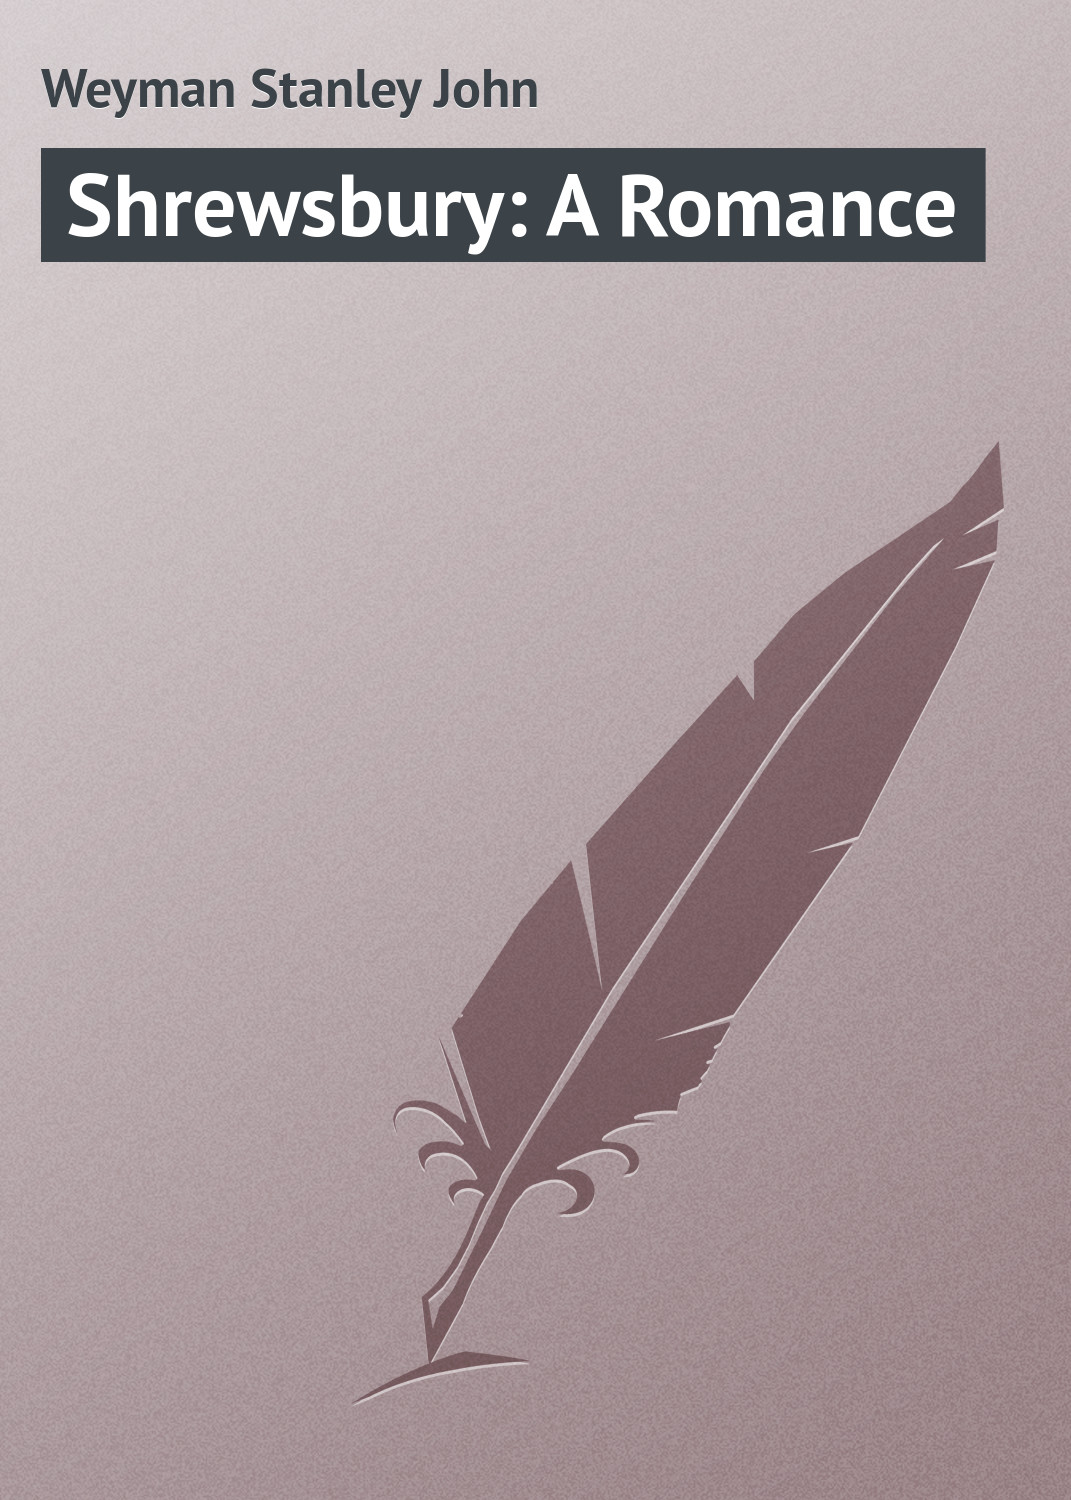 Книга Shrewsbury: A Romance из серии , созданная Stanley Weyman, может относится к жанру Иностранные языки, Зарубежная классика. Стоимость электронной книги Shrewsbury: A Romance с идентификатором 23158131 составляет 5.99 руб.